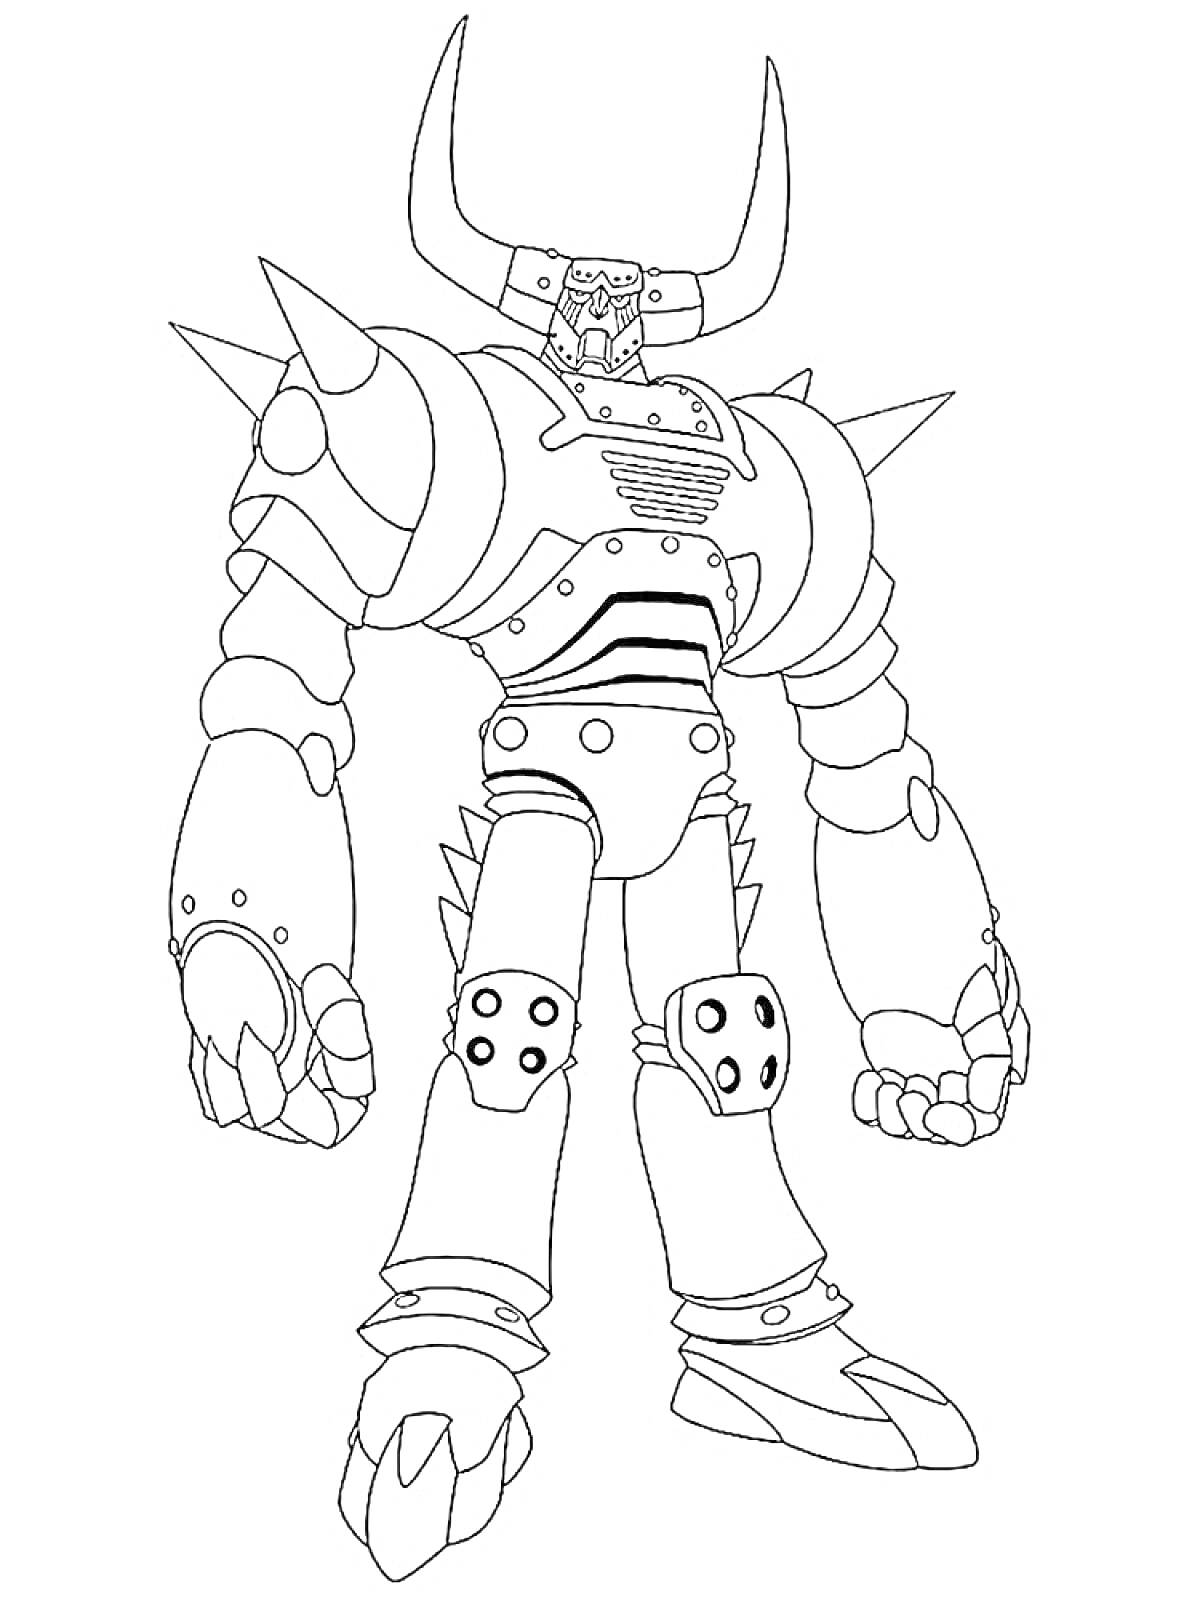 Раскраска Бакуган - робот с шипами и длинными рогами, в доспехах, с когтями на руках и ногах